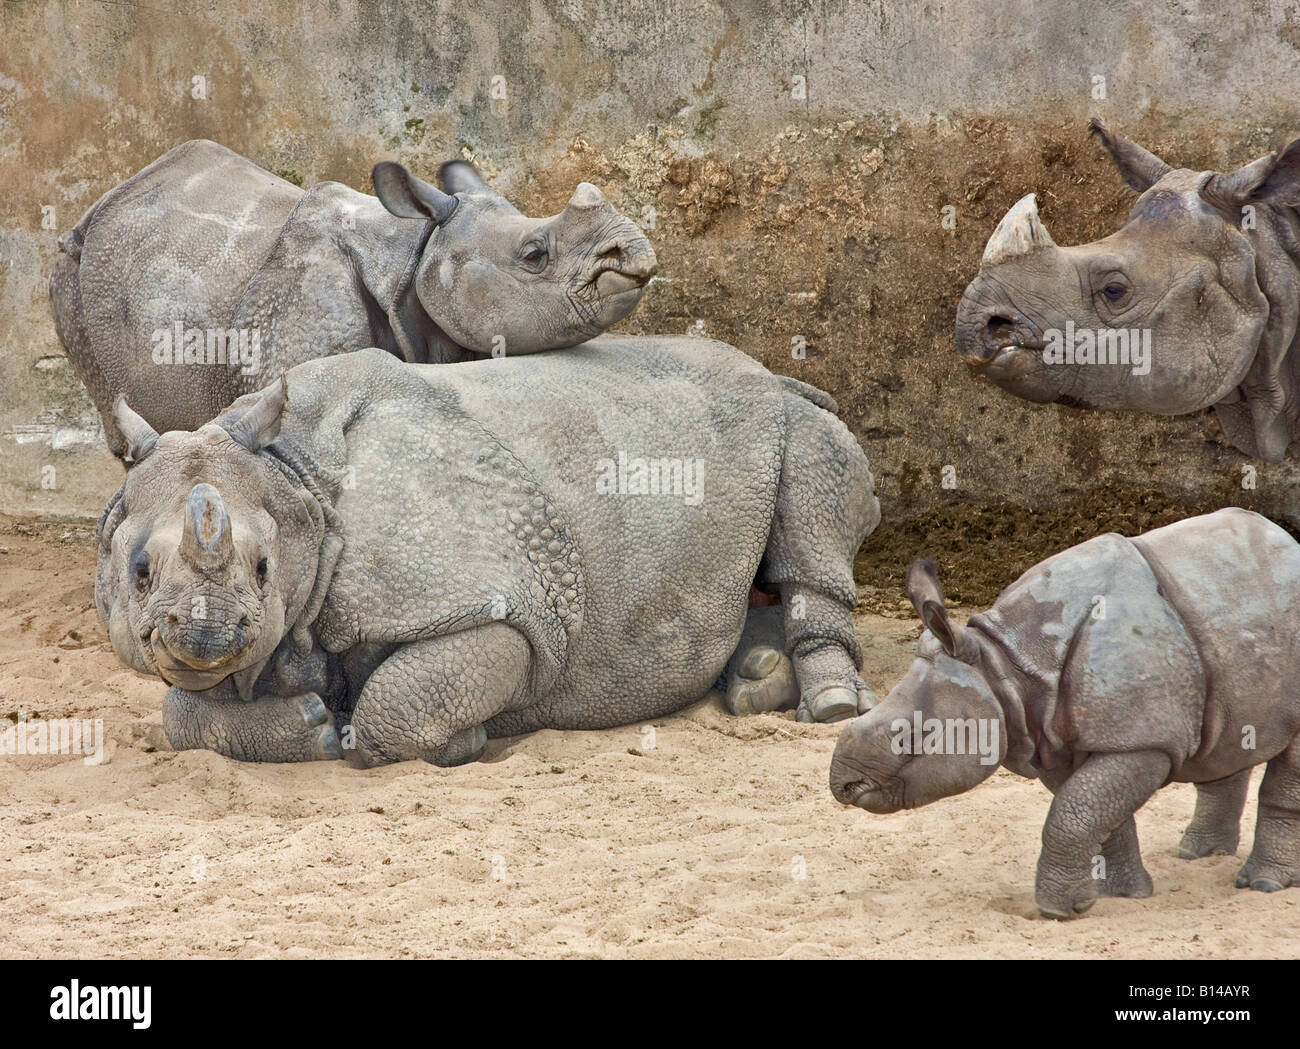 Un rhinocéros indien bébé iguane rhinocéros femelle juvénile défis en jeu lutte comme sa mère anxieuse regarde sur Banque D'Images